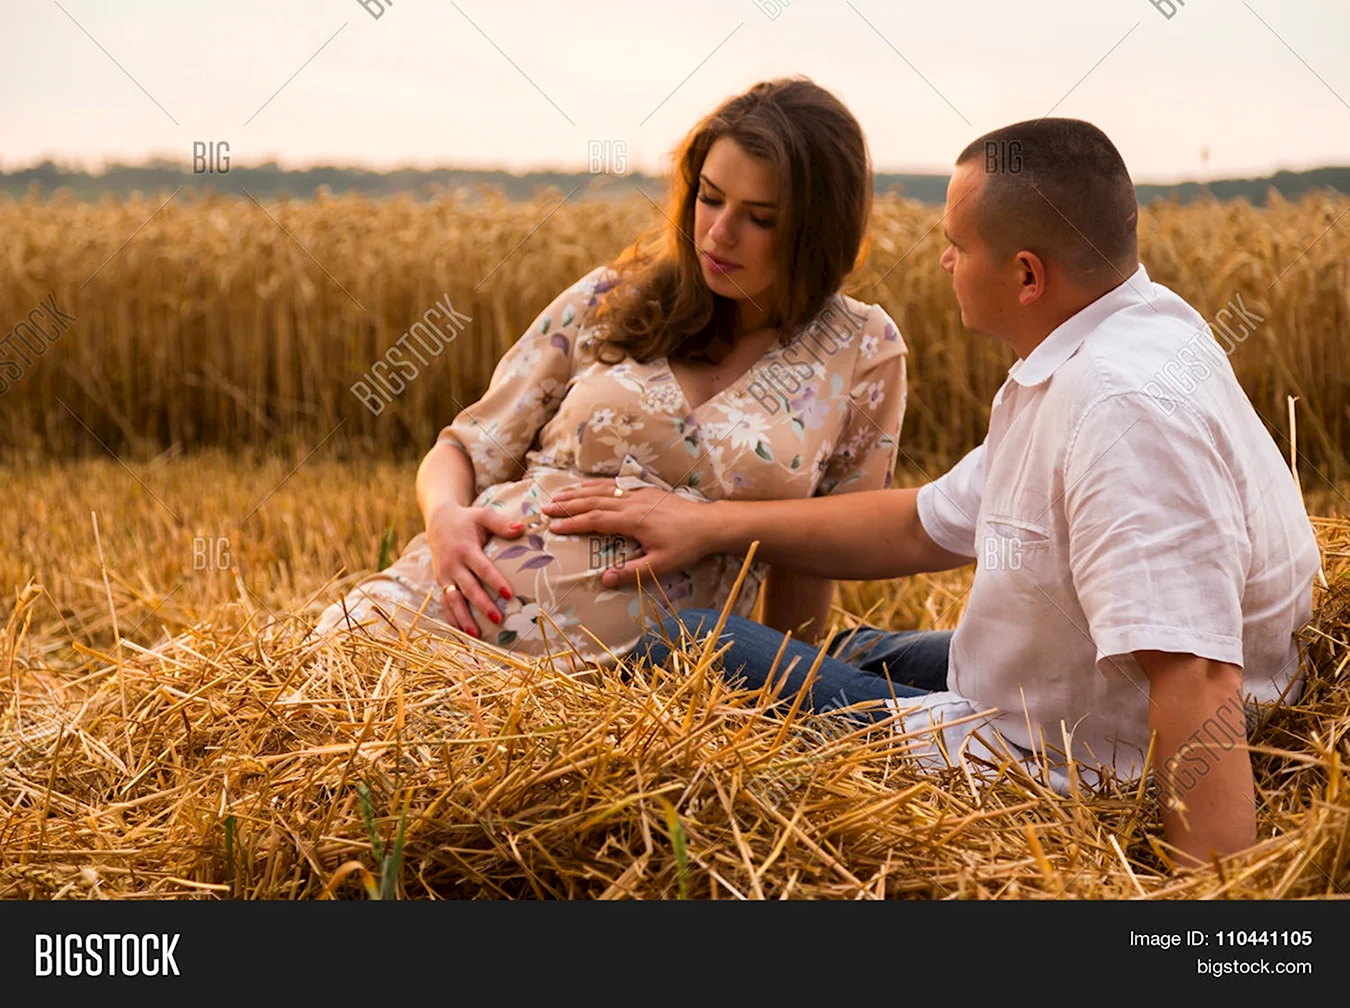 Фотосессия в пшенице беременности